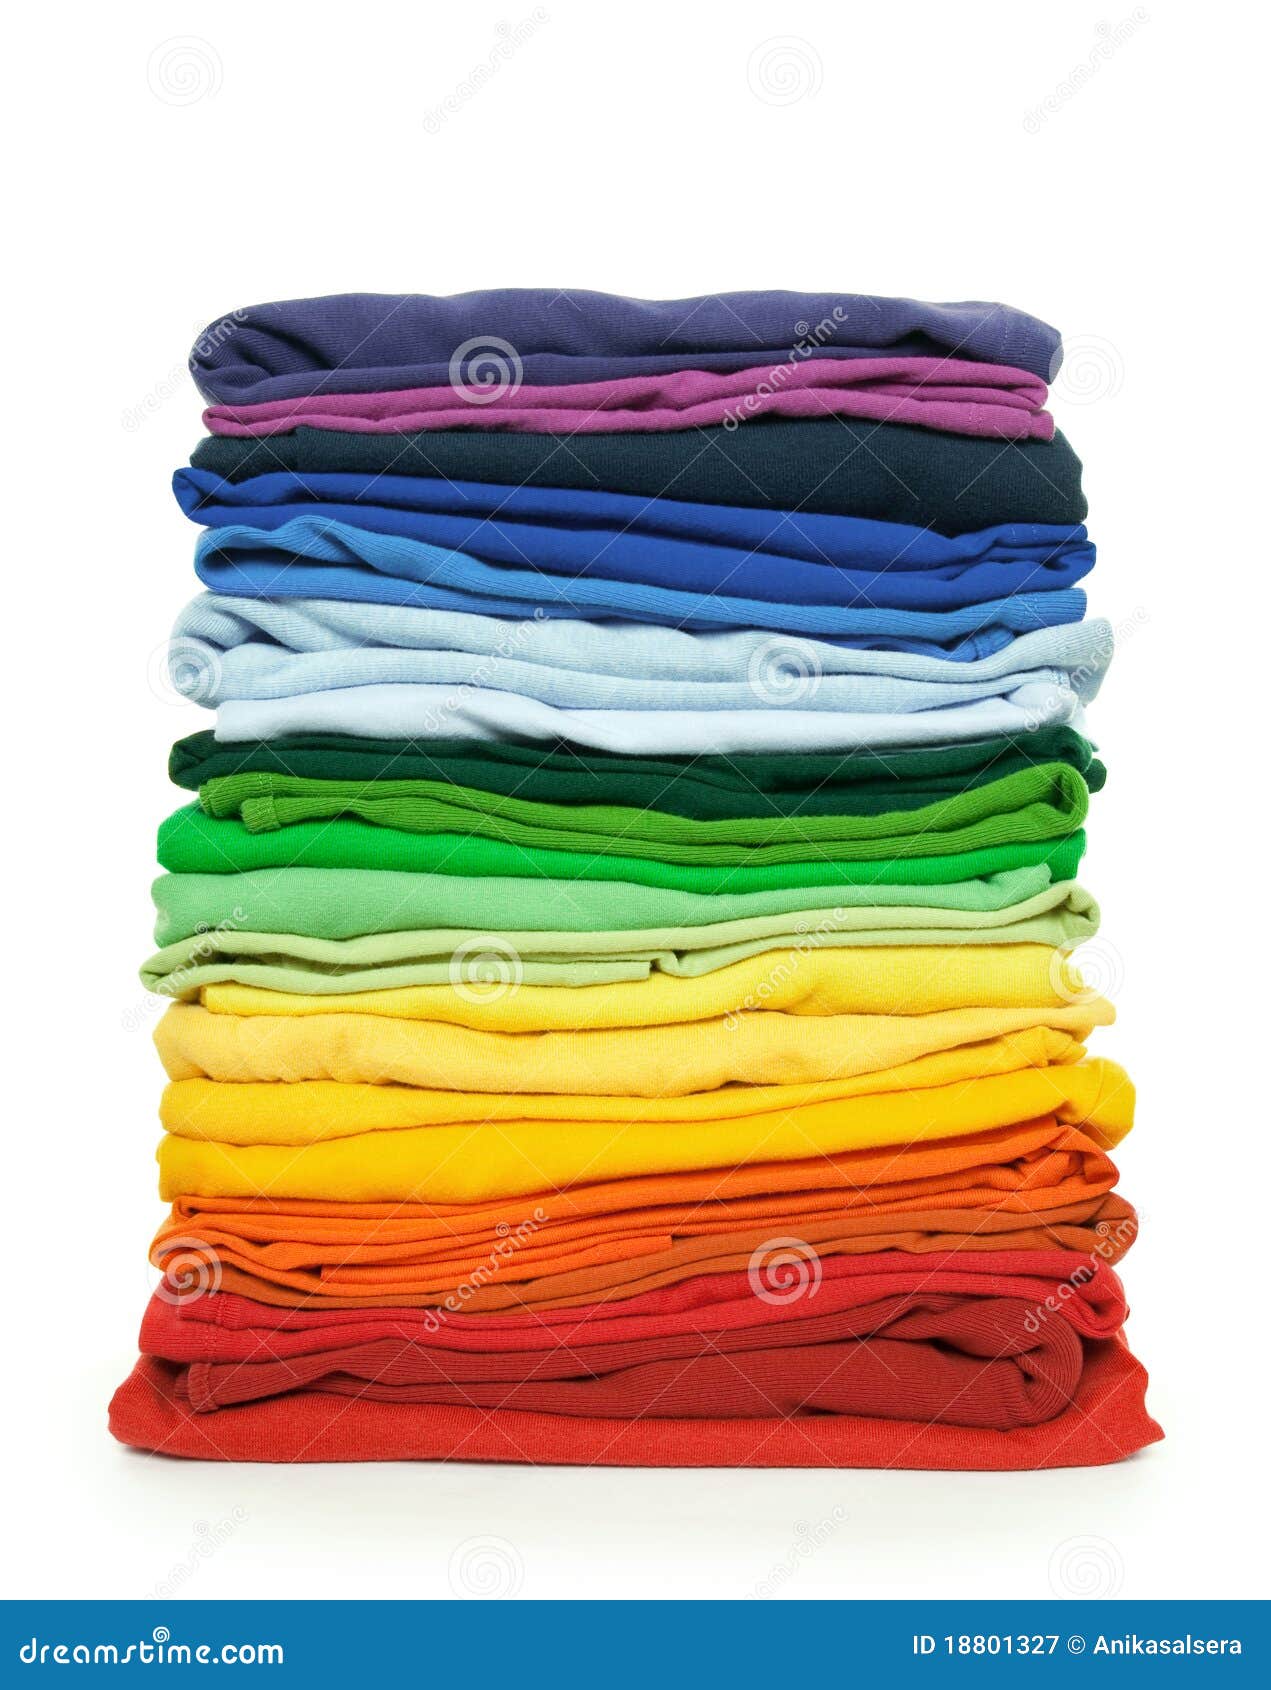 rainbow clothes pile